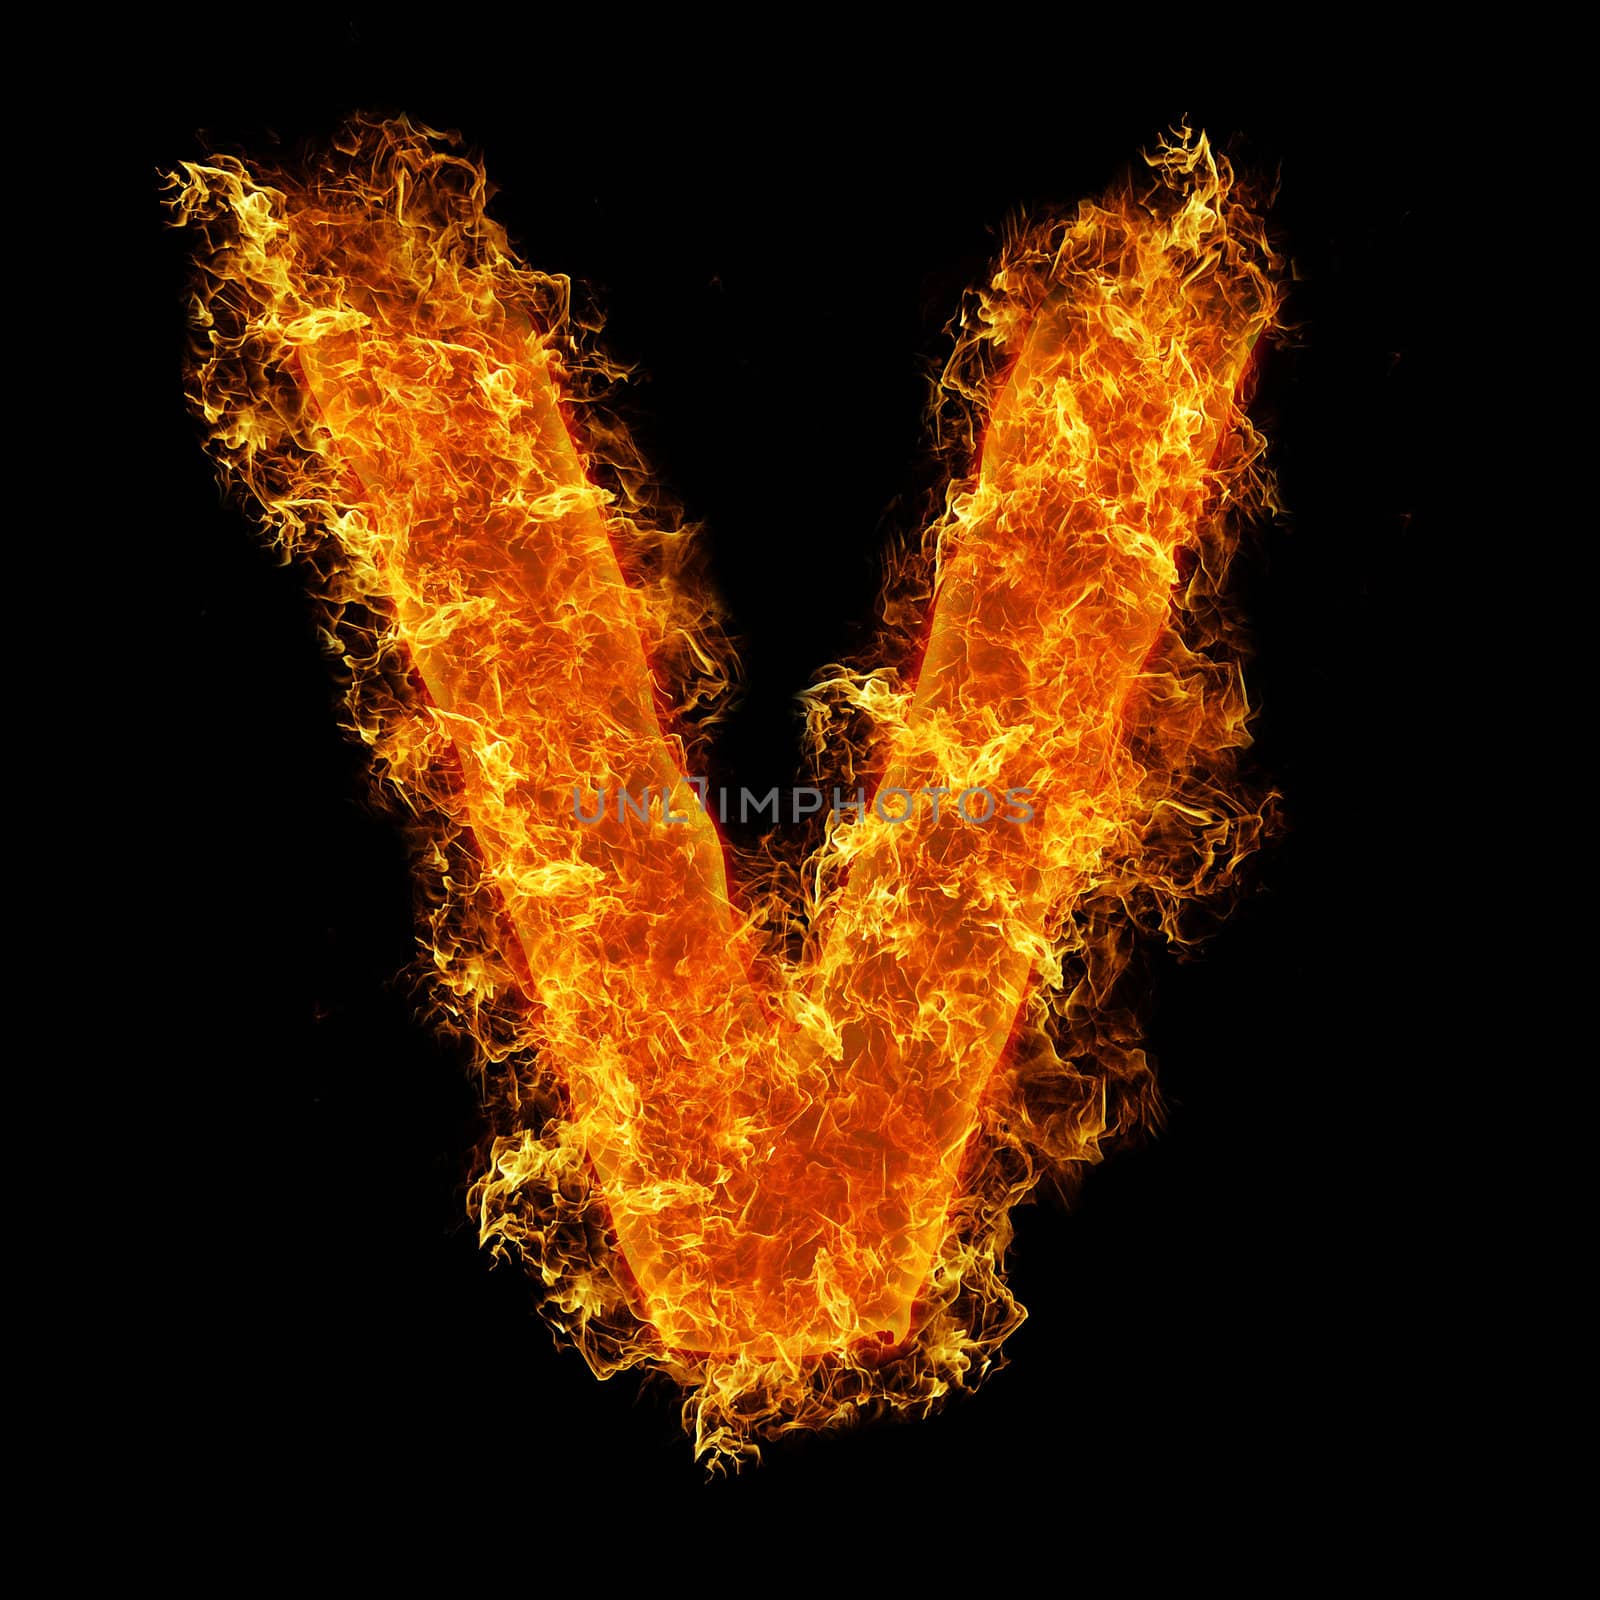 Fire letter V by rusak